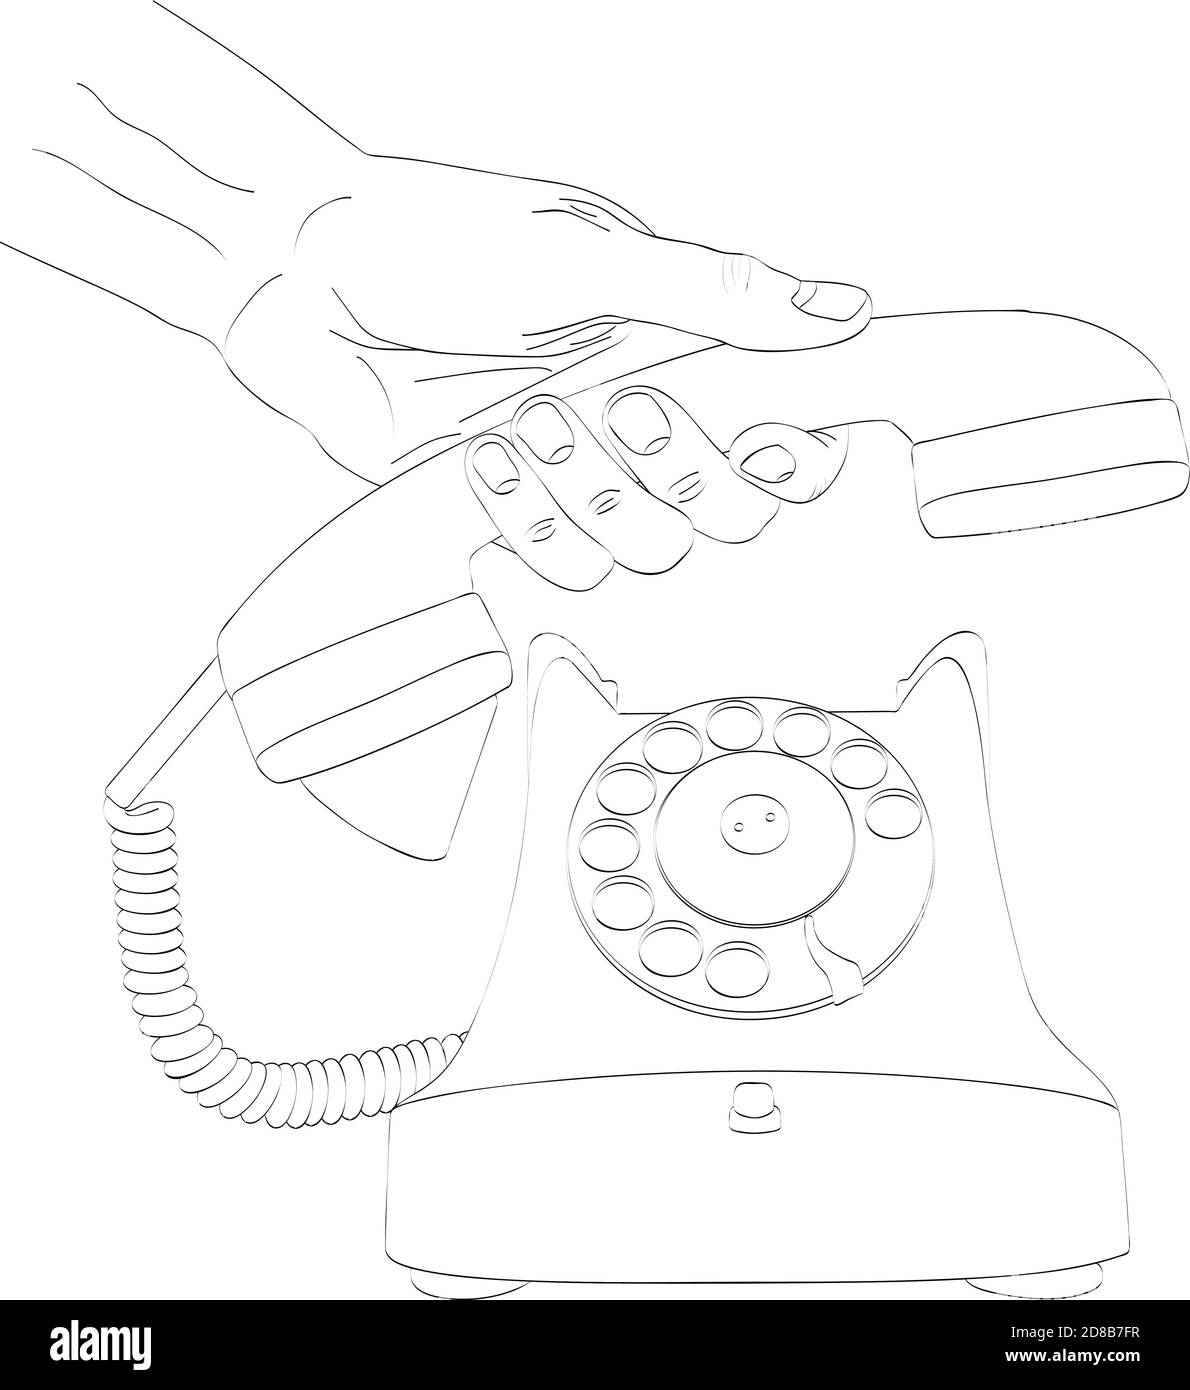 Detalle de una mano de mujer descolgando un teléfono blanco antiguo con  cable. Mano sosteniendo el auricular de un teléfono fijo de casa u oficina.  Concepto de atender una llamada telefónica. Stock